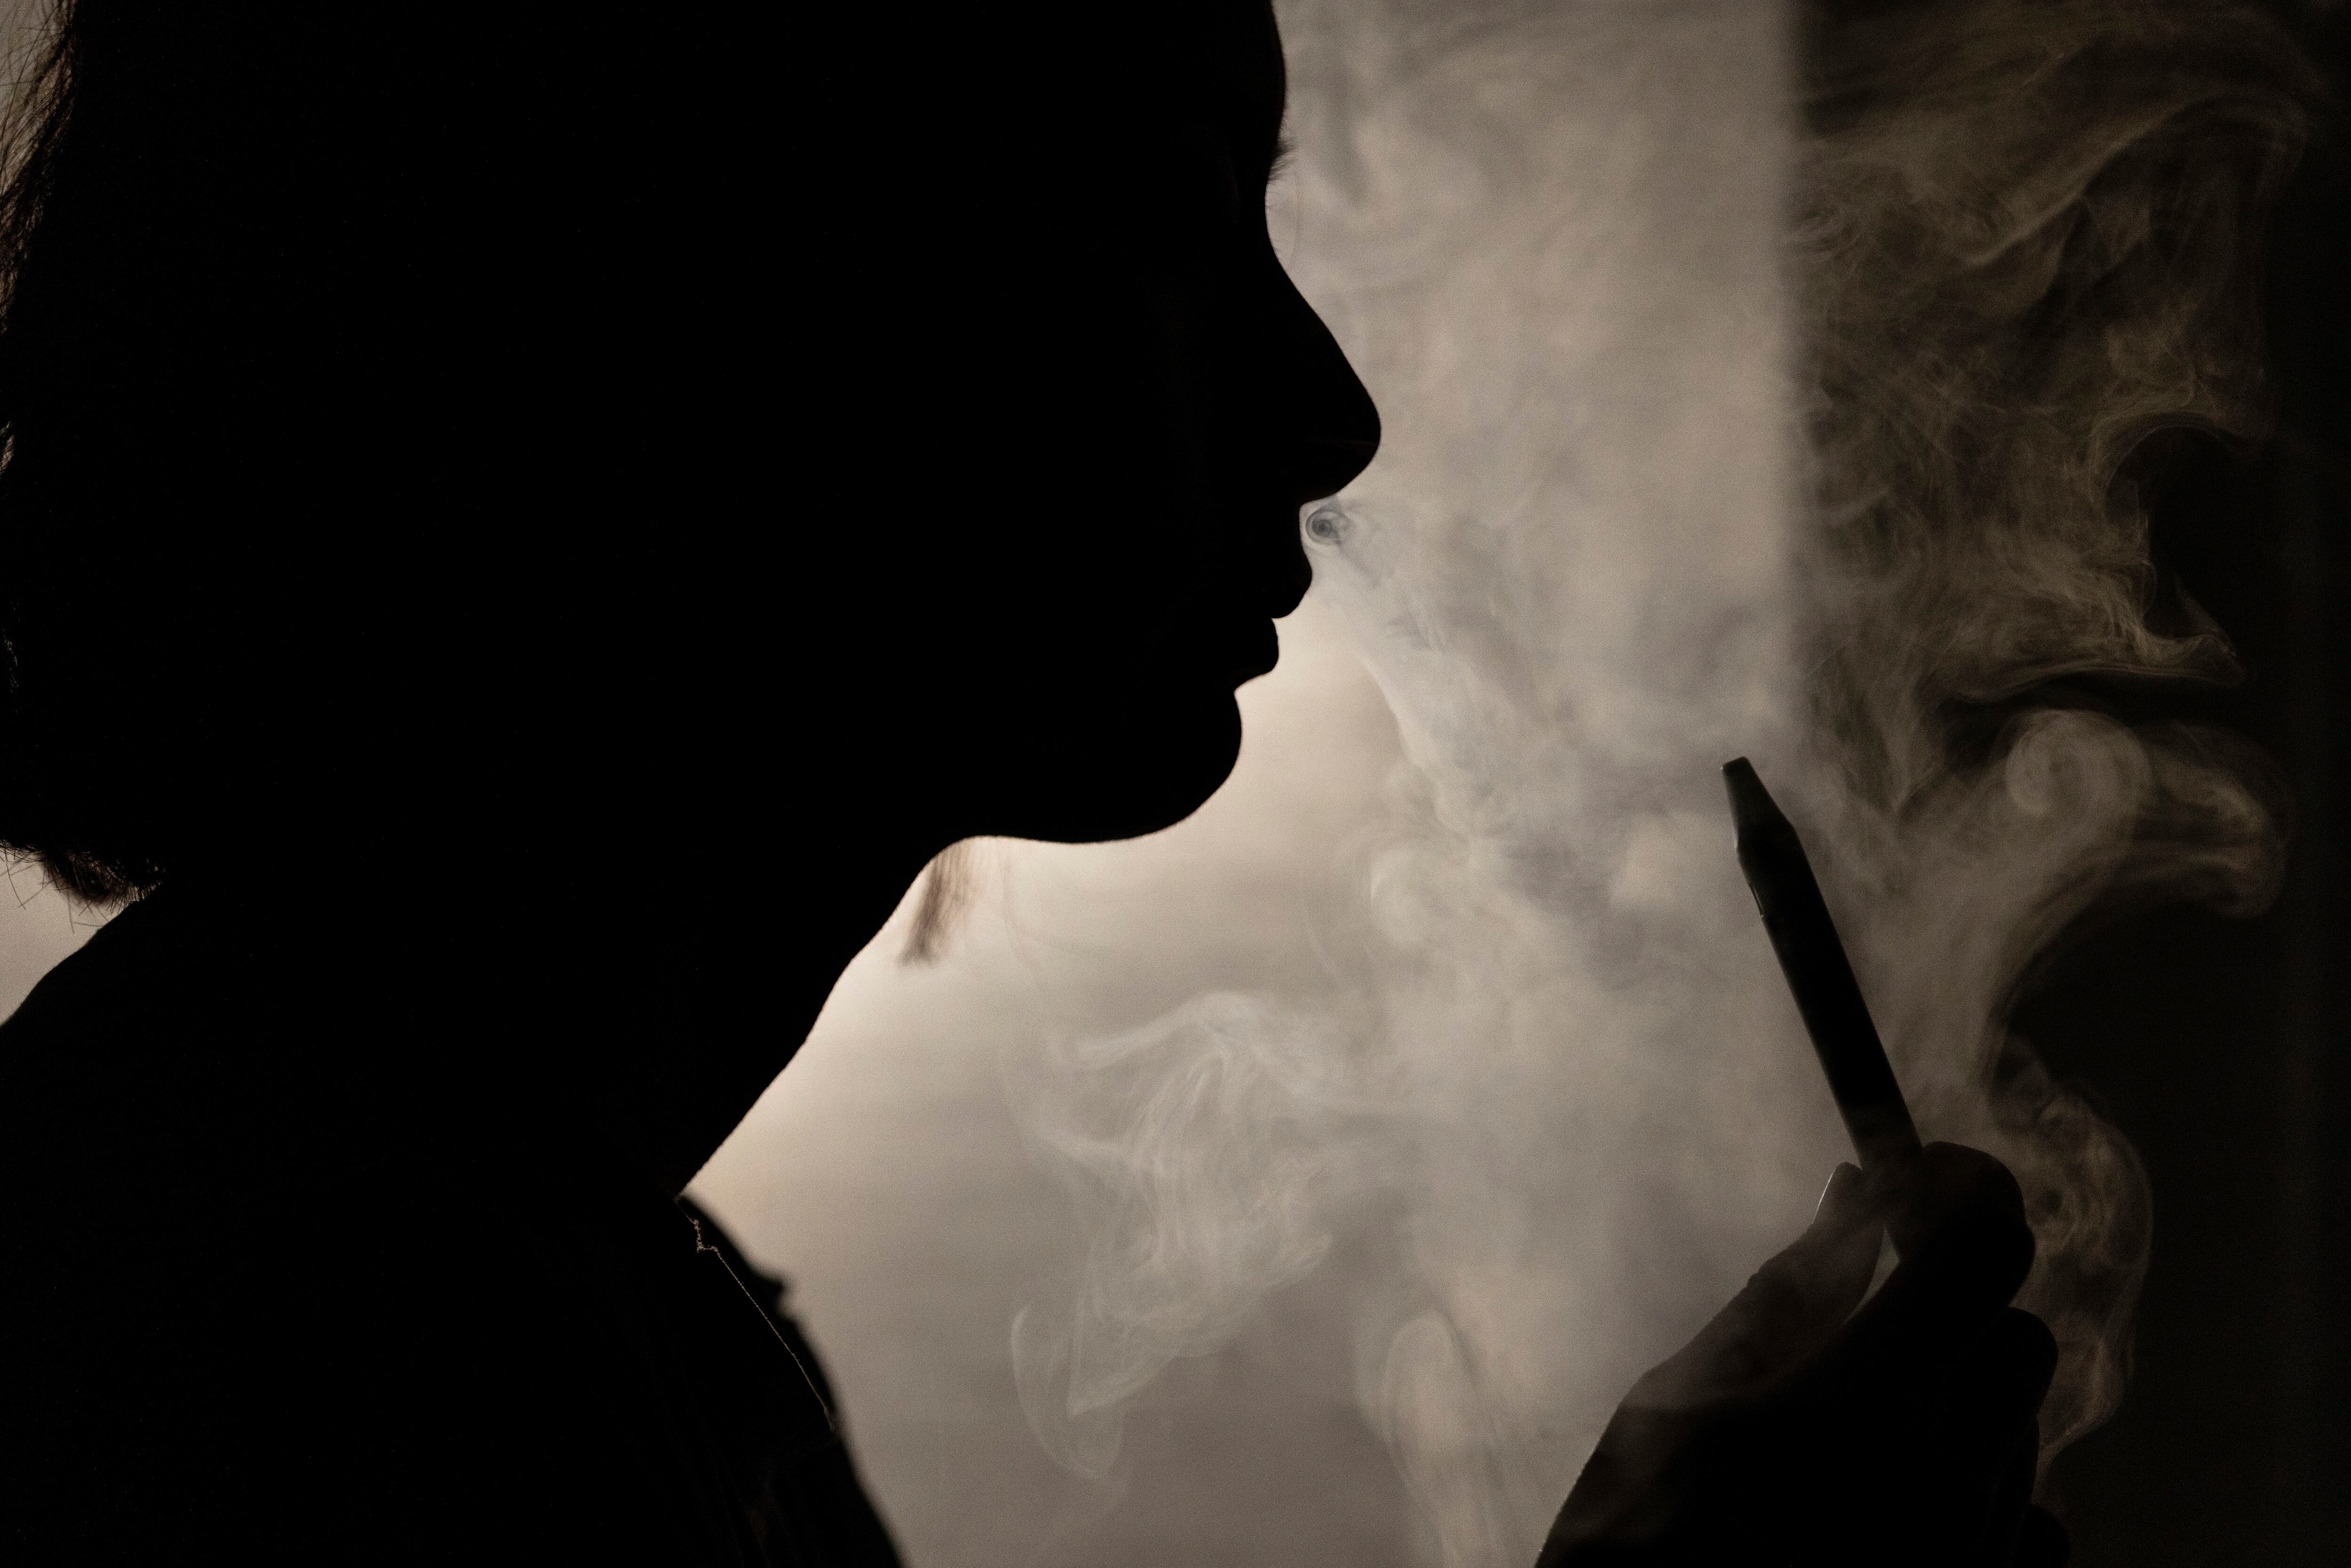 Una nueva investigación resalta los daños de los cigarrillos electrónicos, demostrando que el vapeo aumenta el riesgo de asma en adolescentes que nunca han fumado cigarrillos convencionales